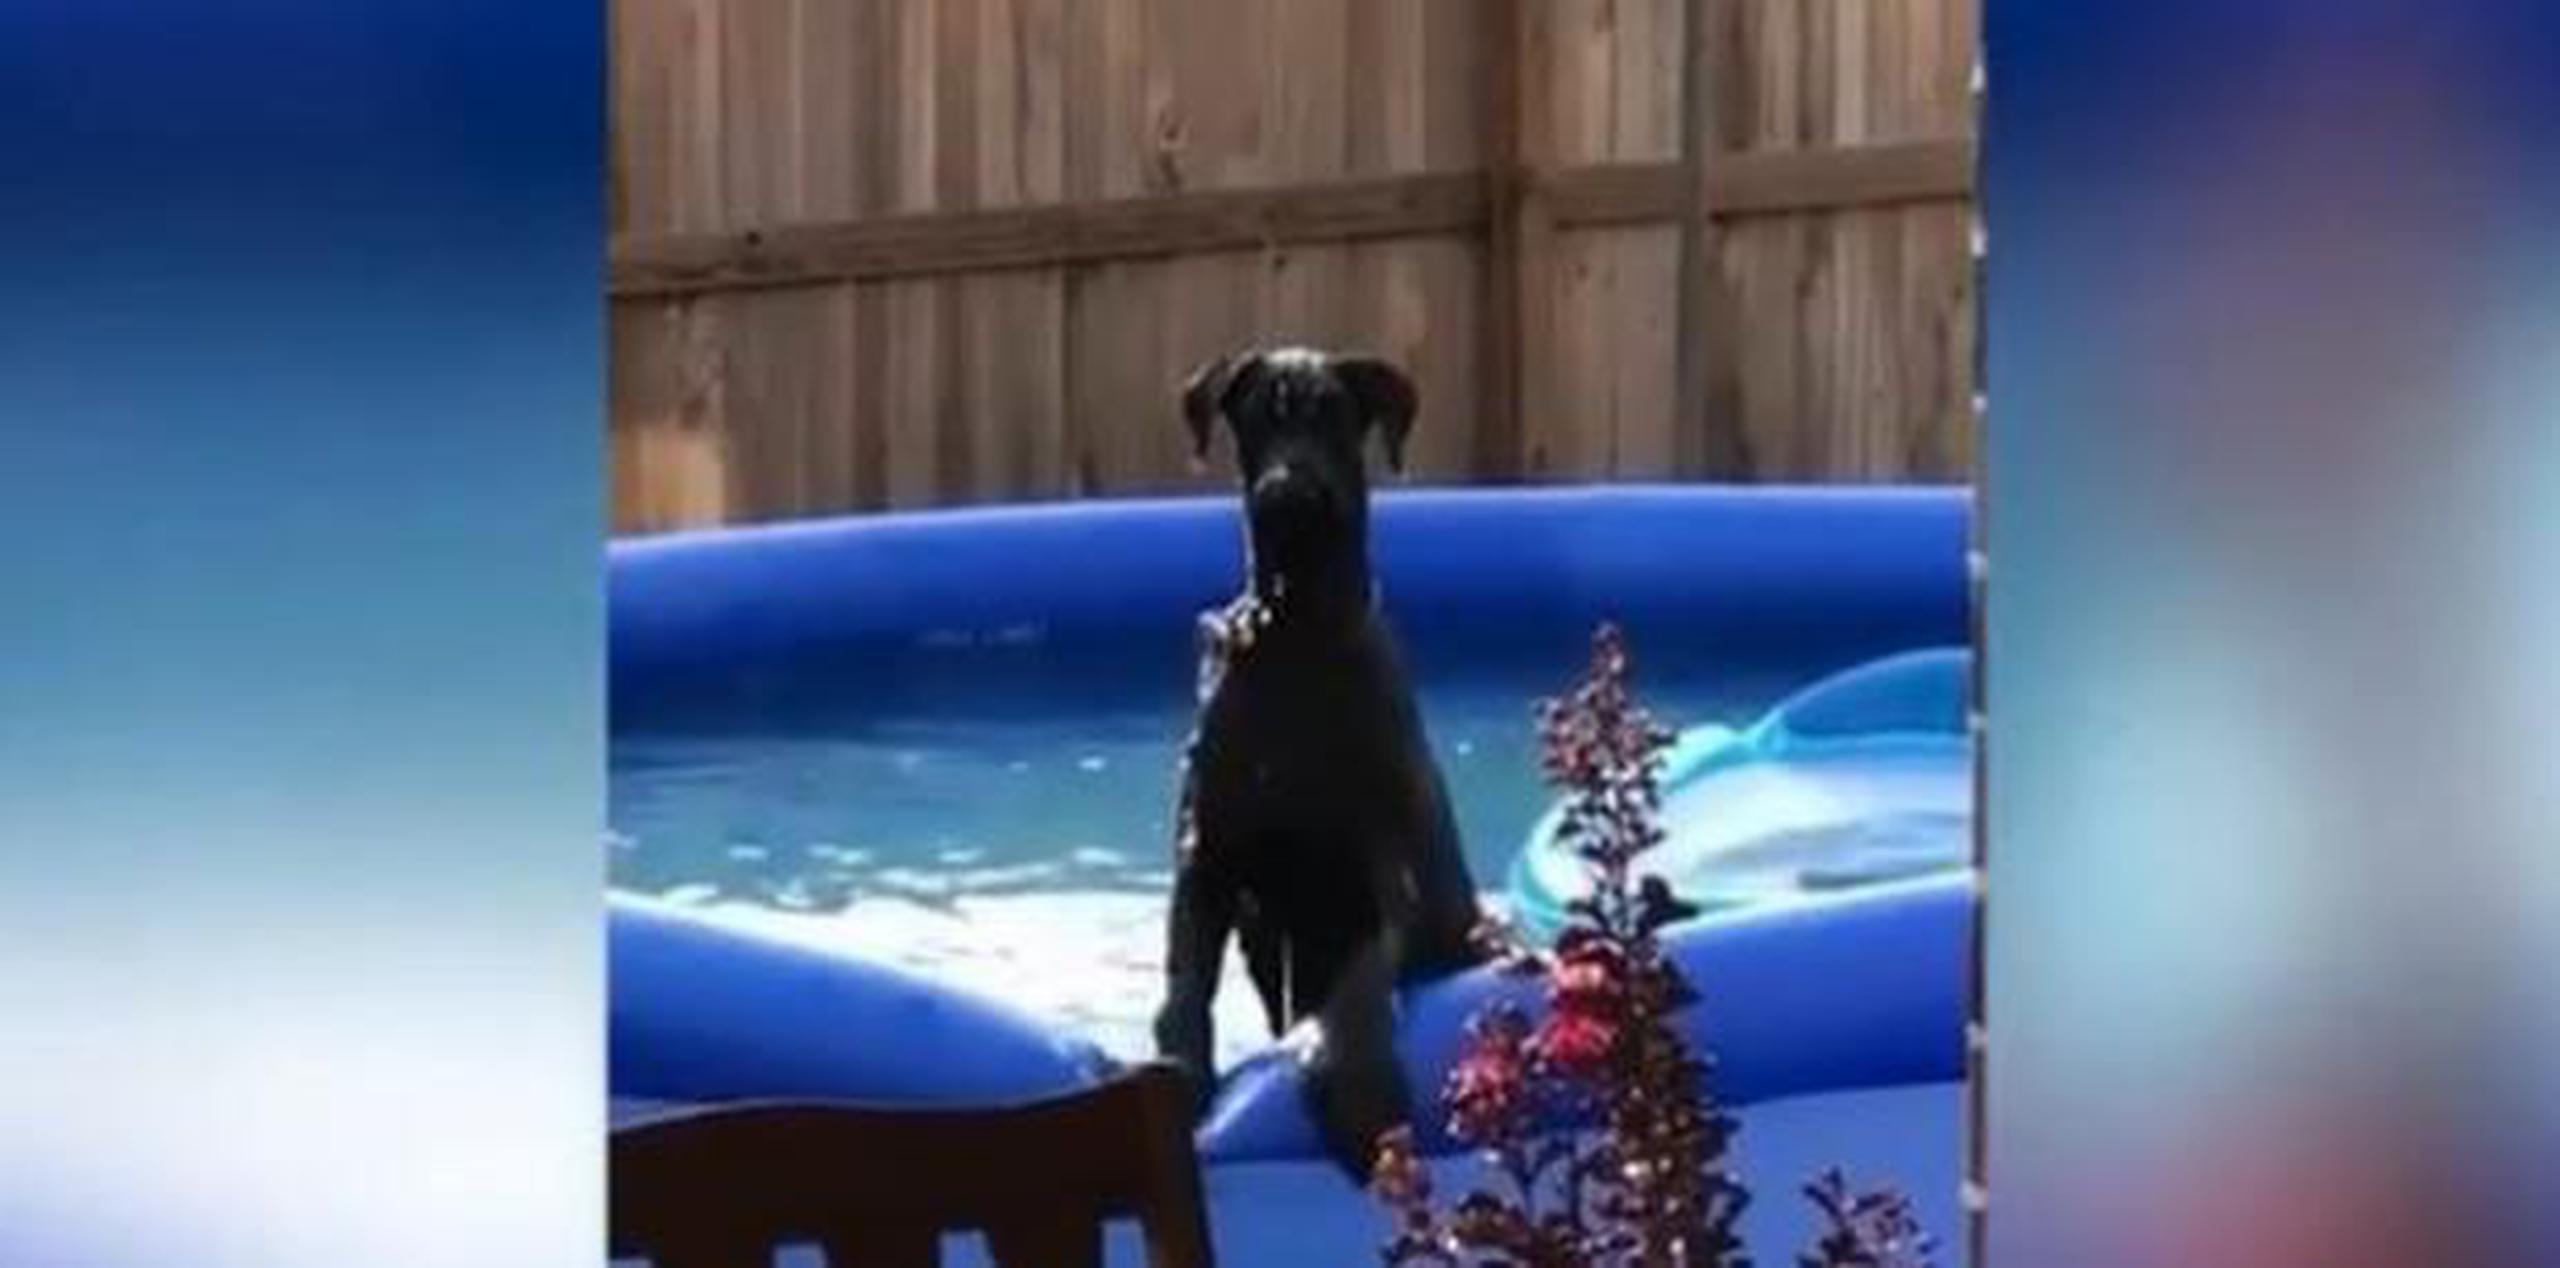 Perro fue sorprendido por su dueño en piscina y lo que hace cautiva a miles. (GDA)